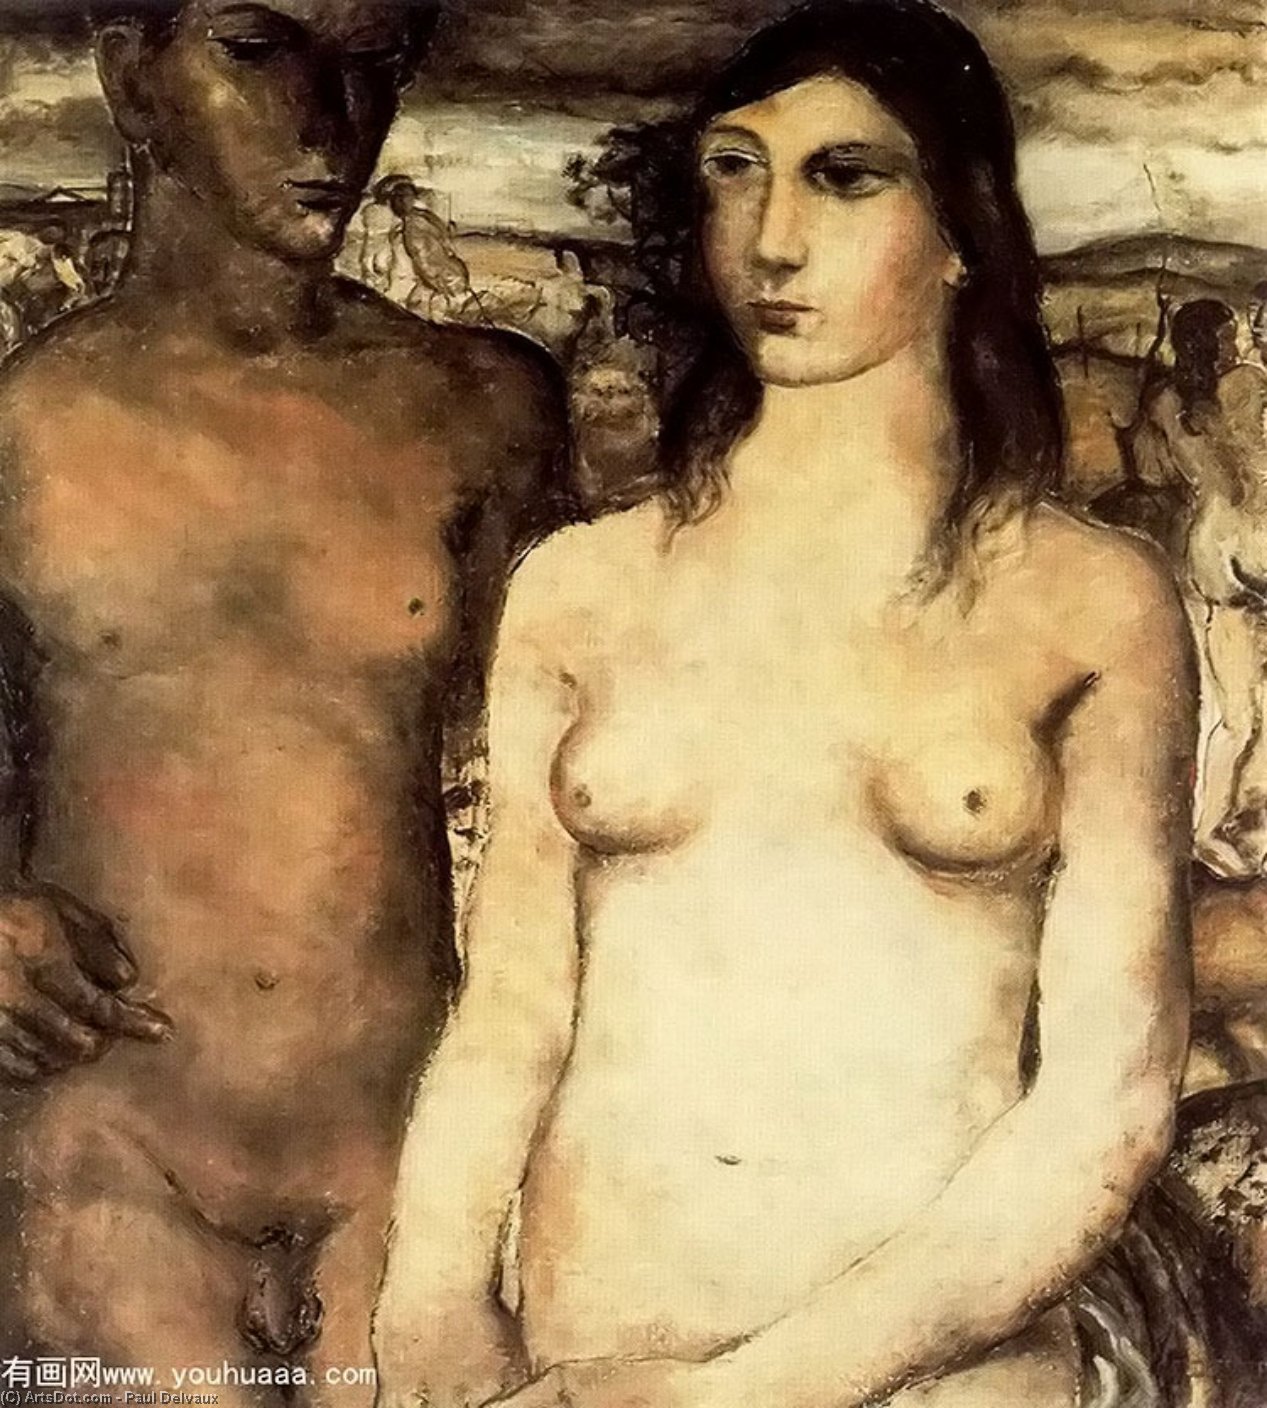 WikiOO.org - Enciclopedia of Fine Arts - Pictura, lucrări de artă Paul Delvaux - The couple